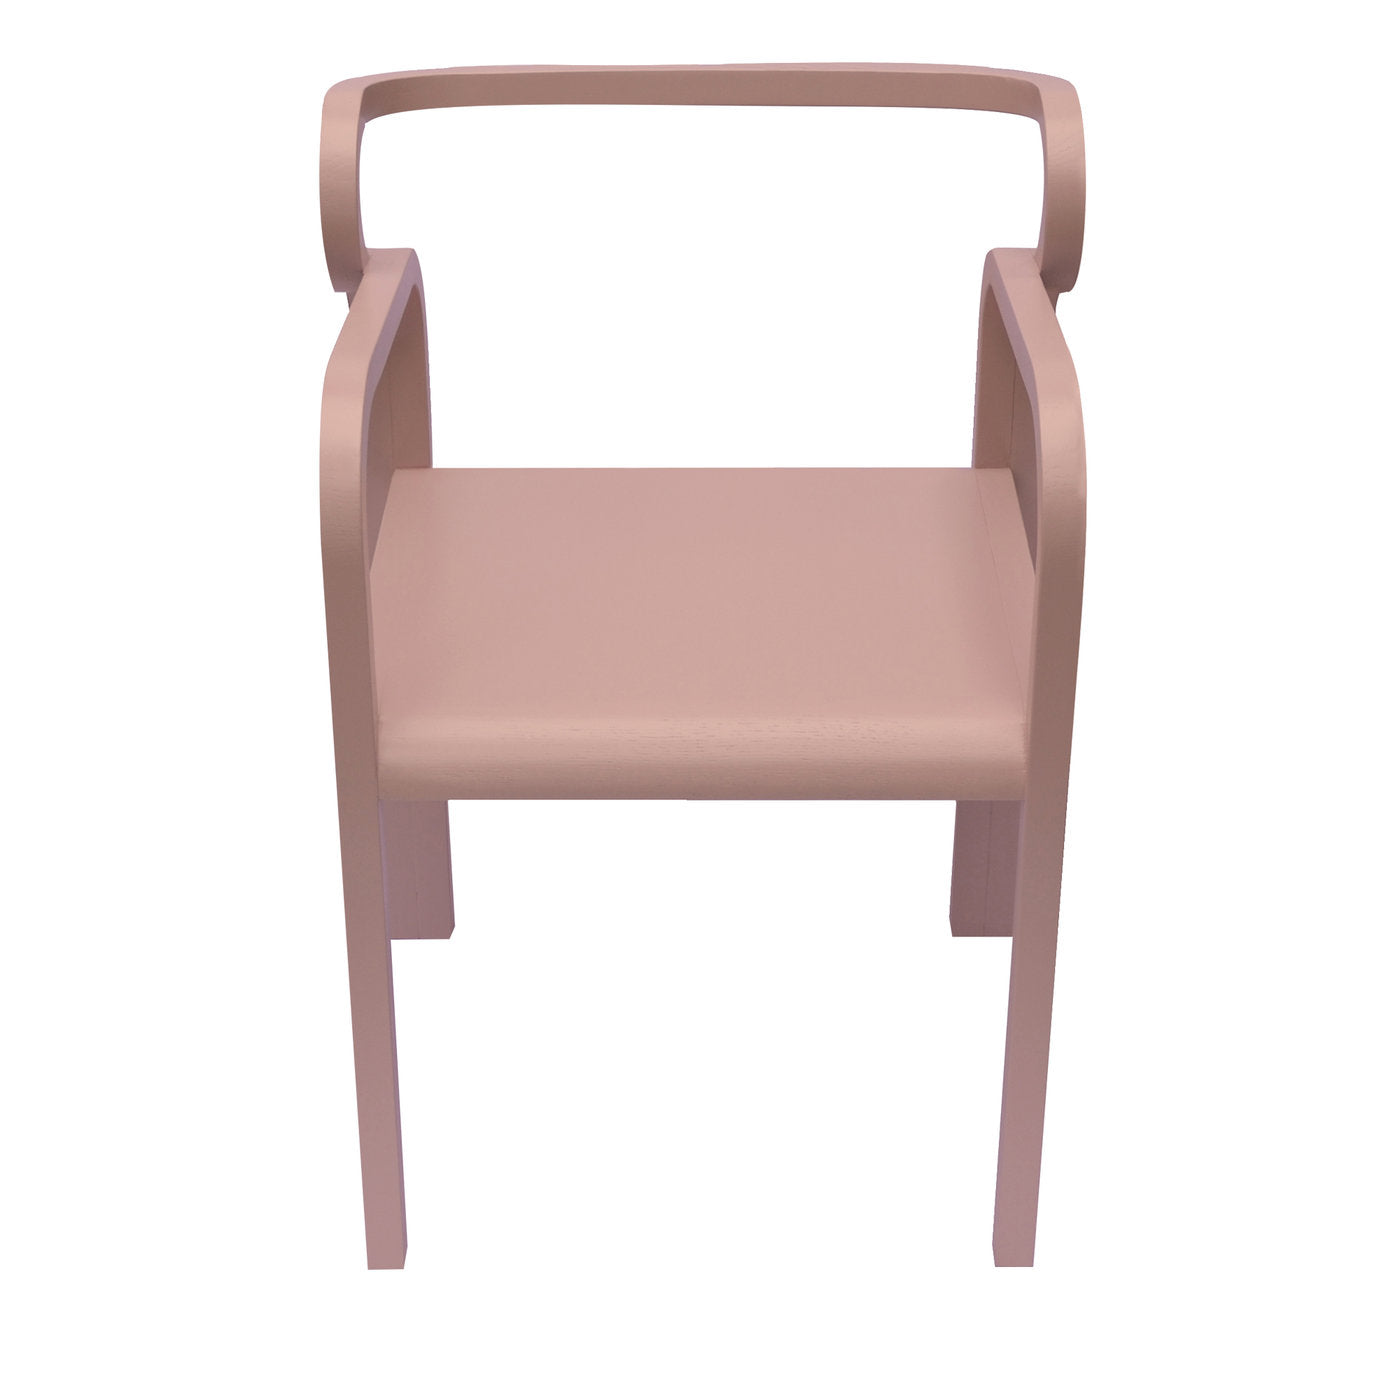 Odette Chair - Alternative view 1